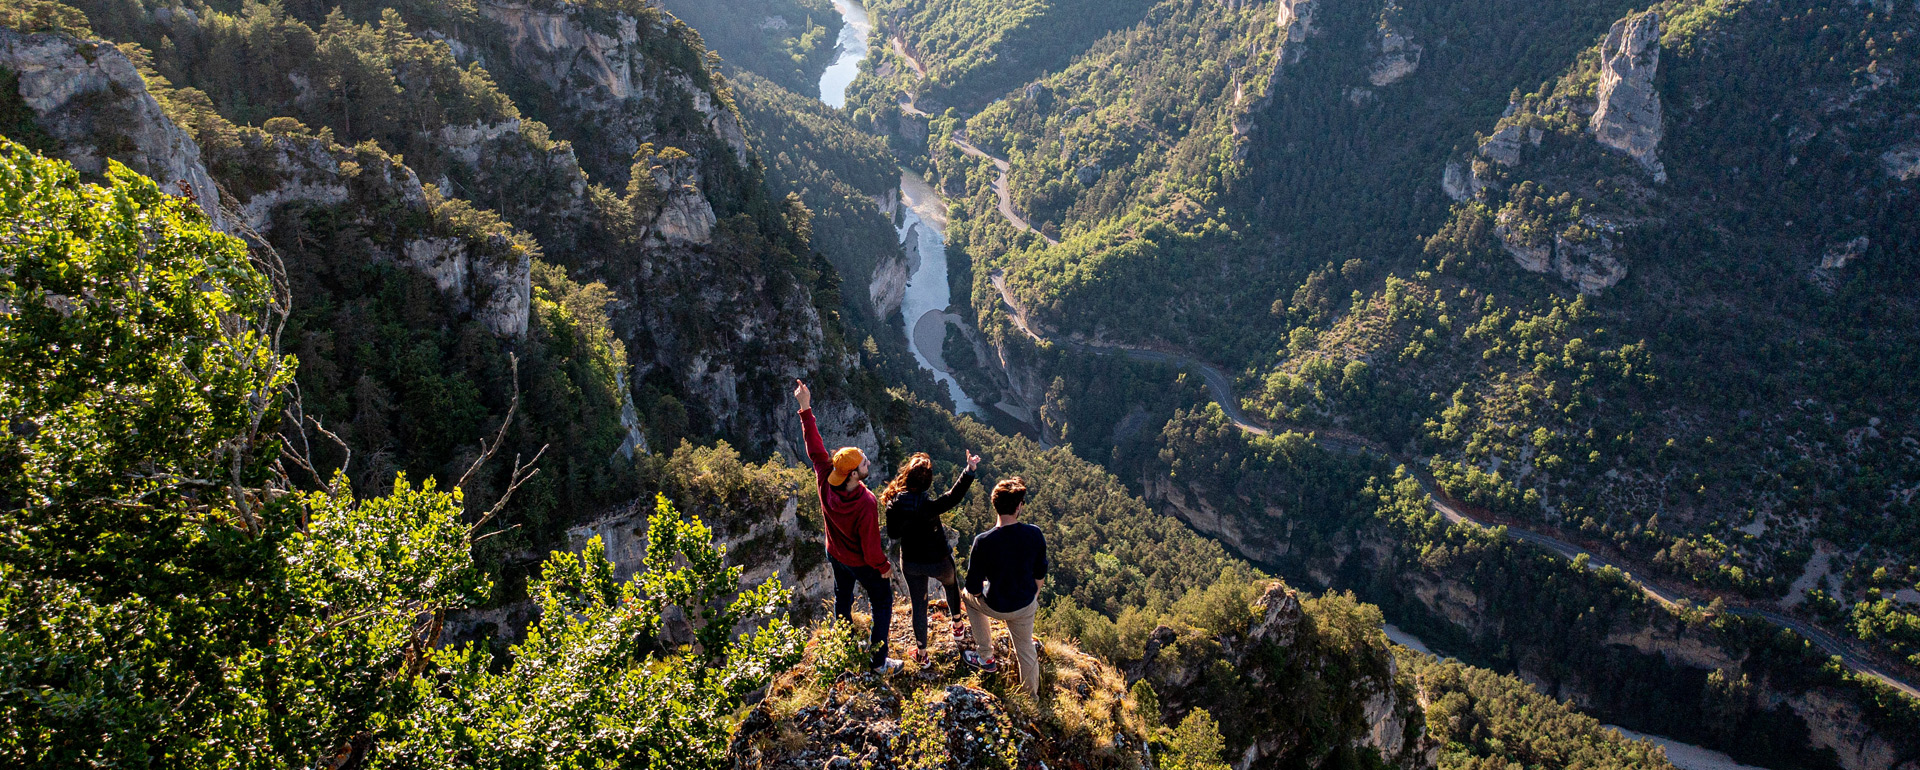 Gorges du Tarn © Kikimag Travel